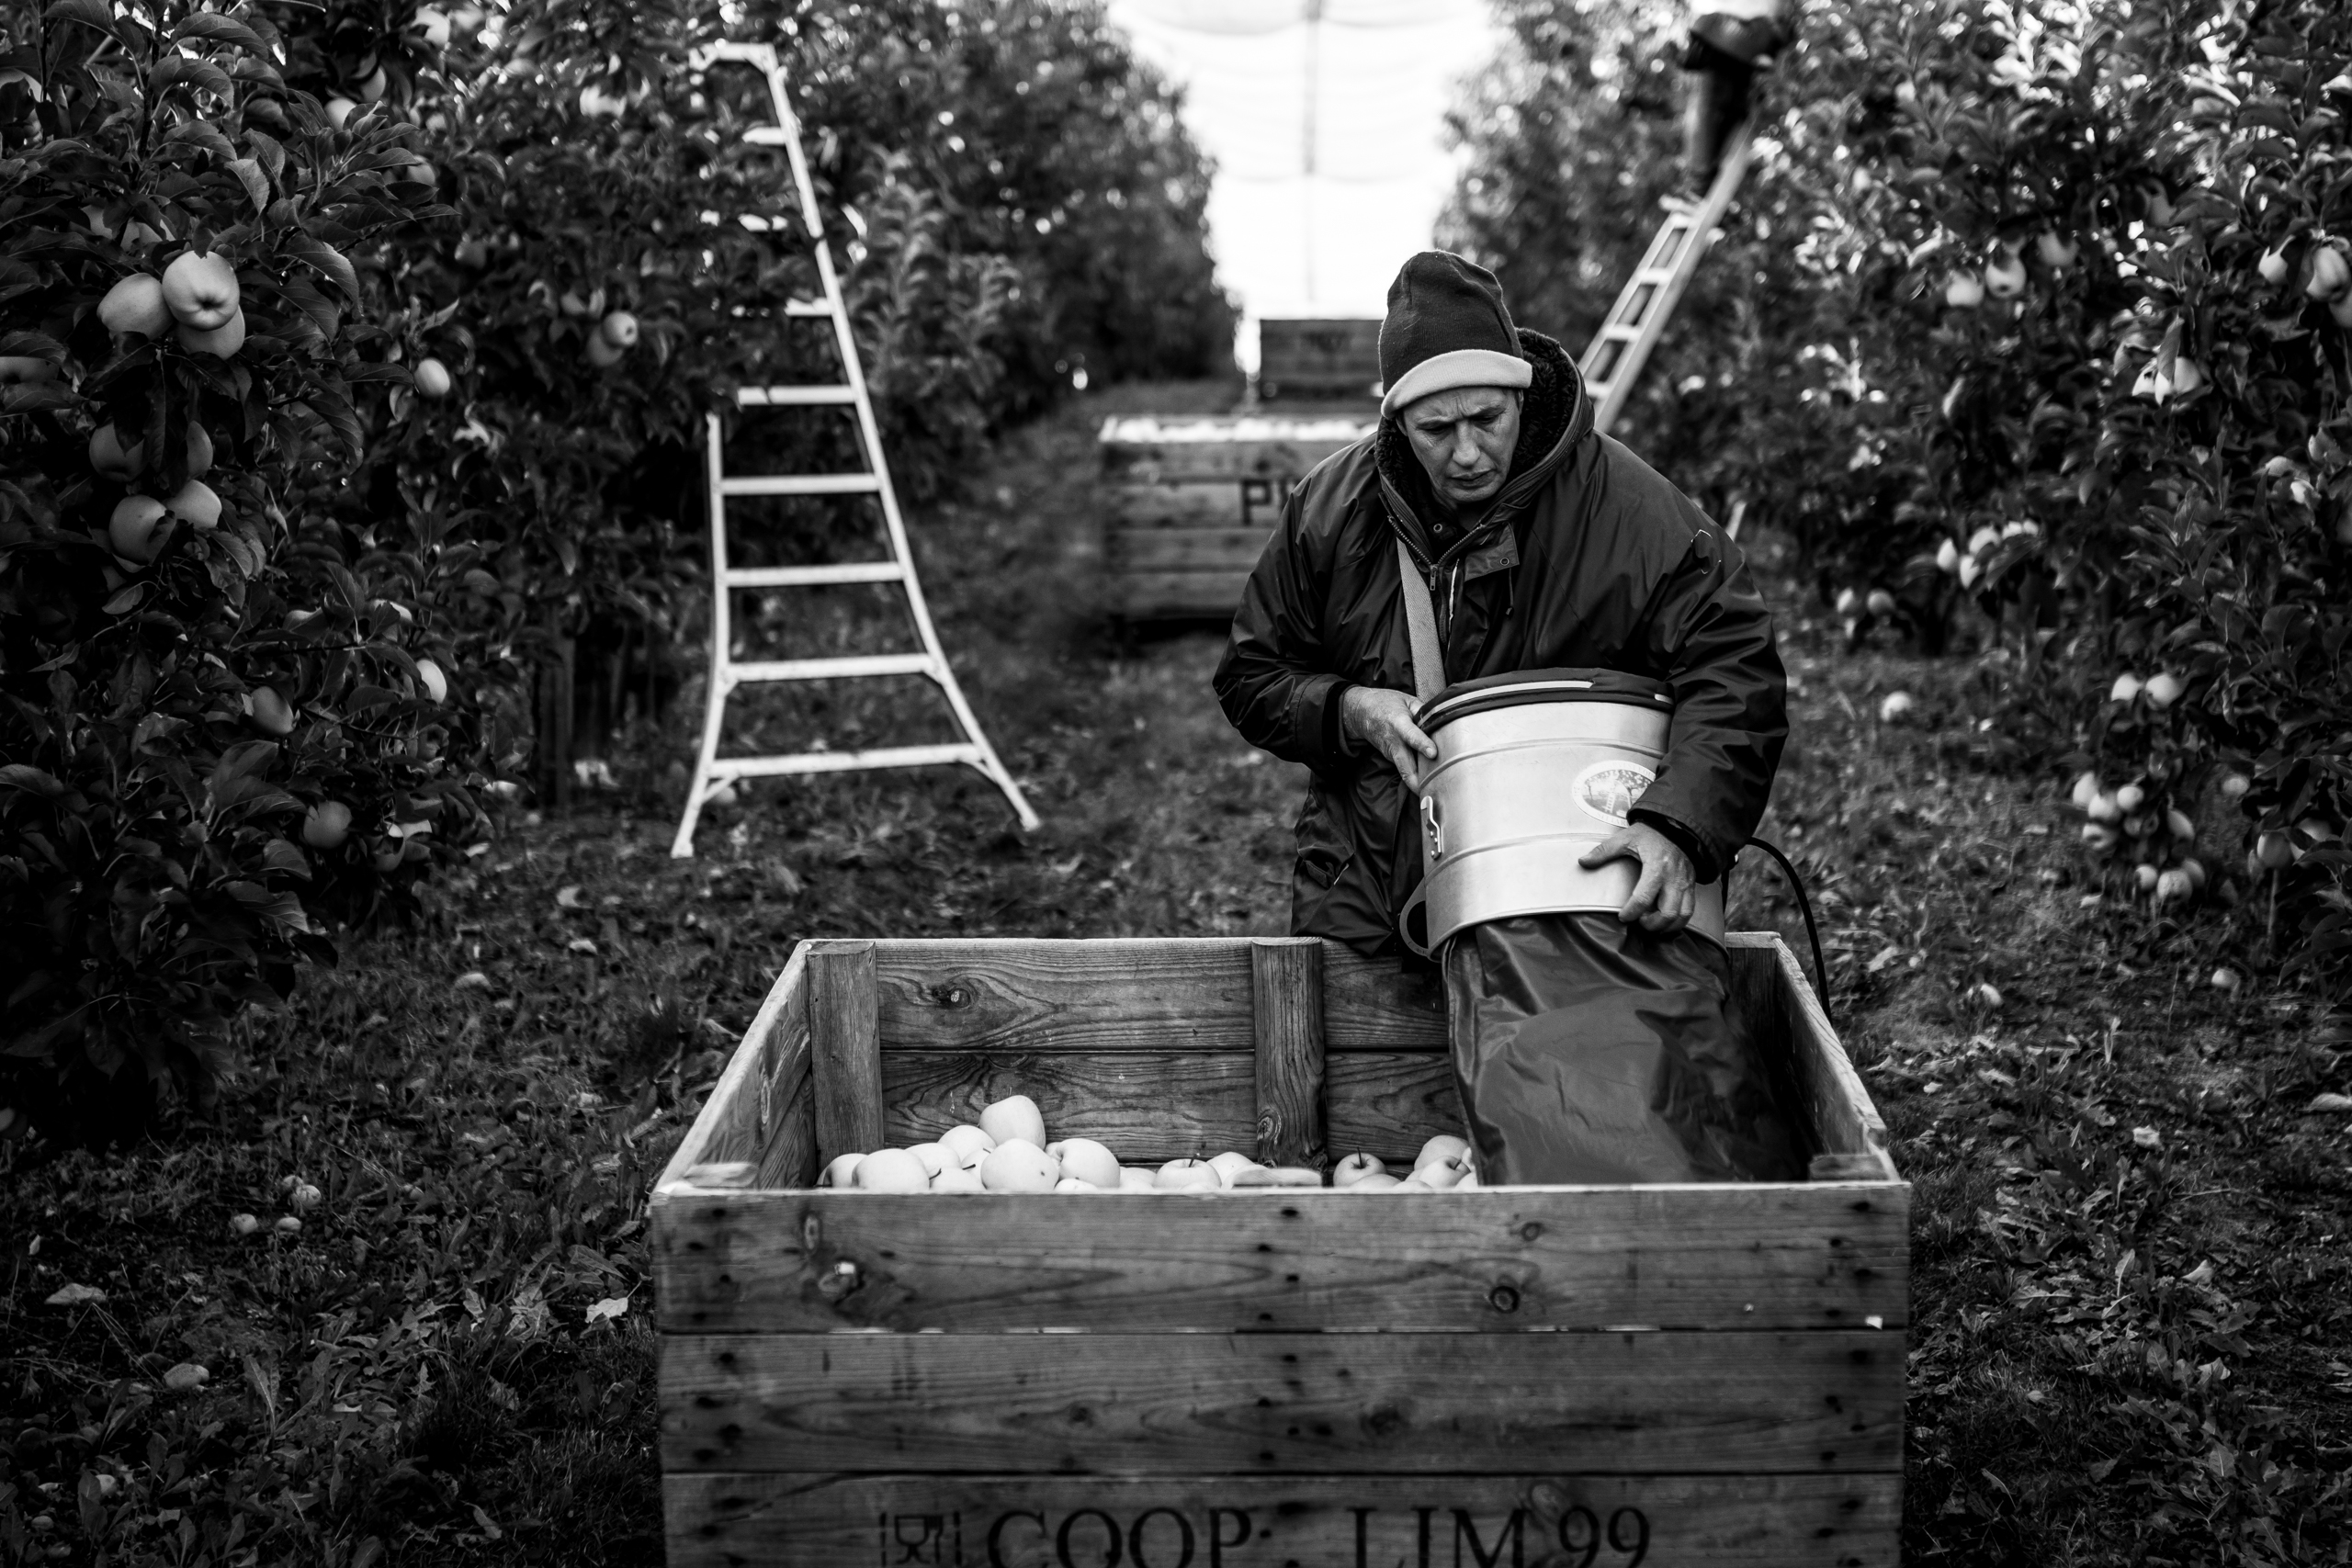 La recogida de la manzana en Francia es un trabajo de temporada que se realiza entre los meses de septiembre y octubre.